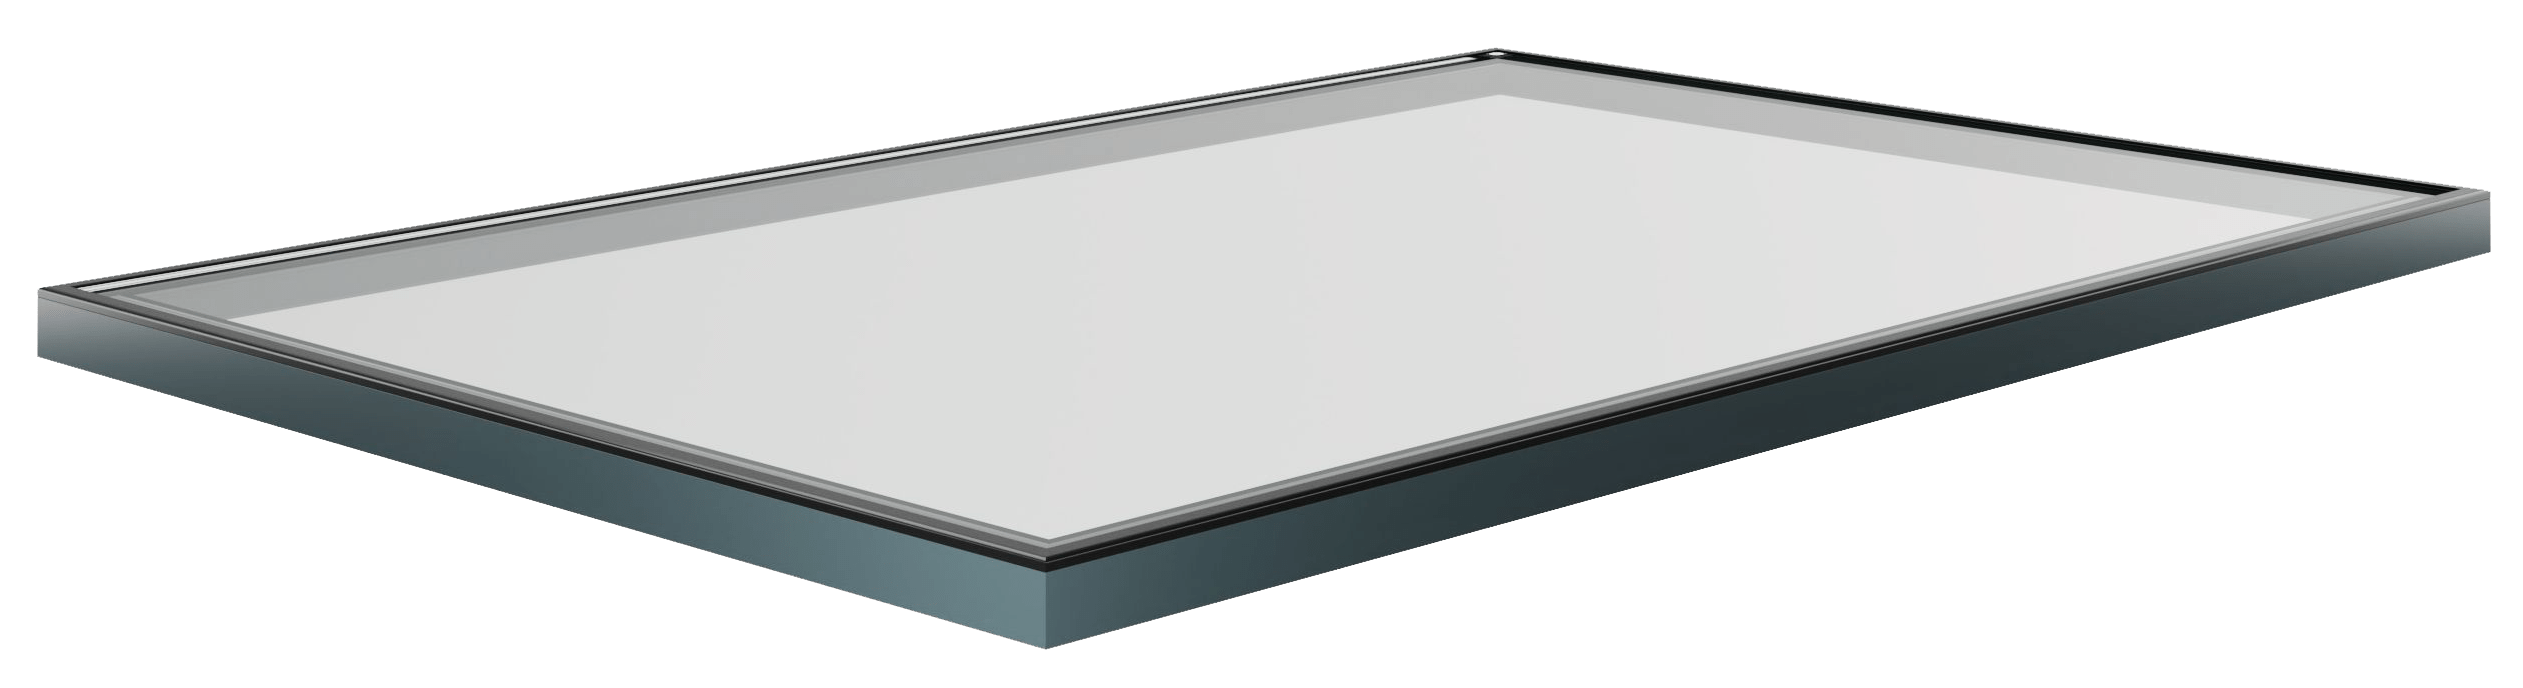 Korniche Flat Glass Rooflight - Neutral Glass